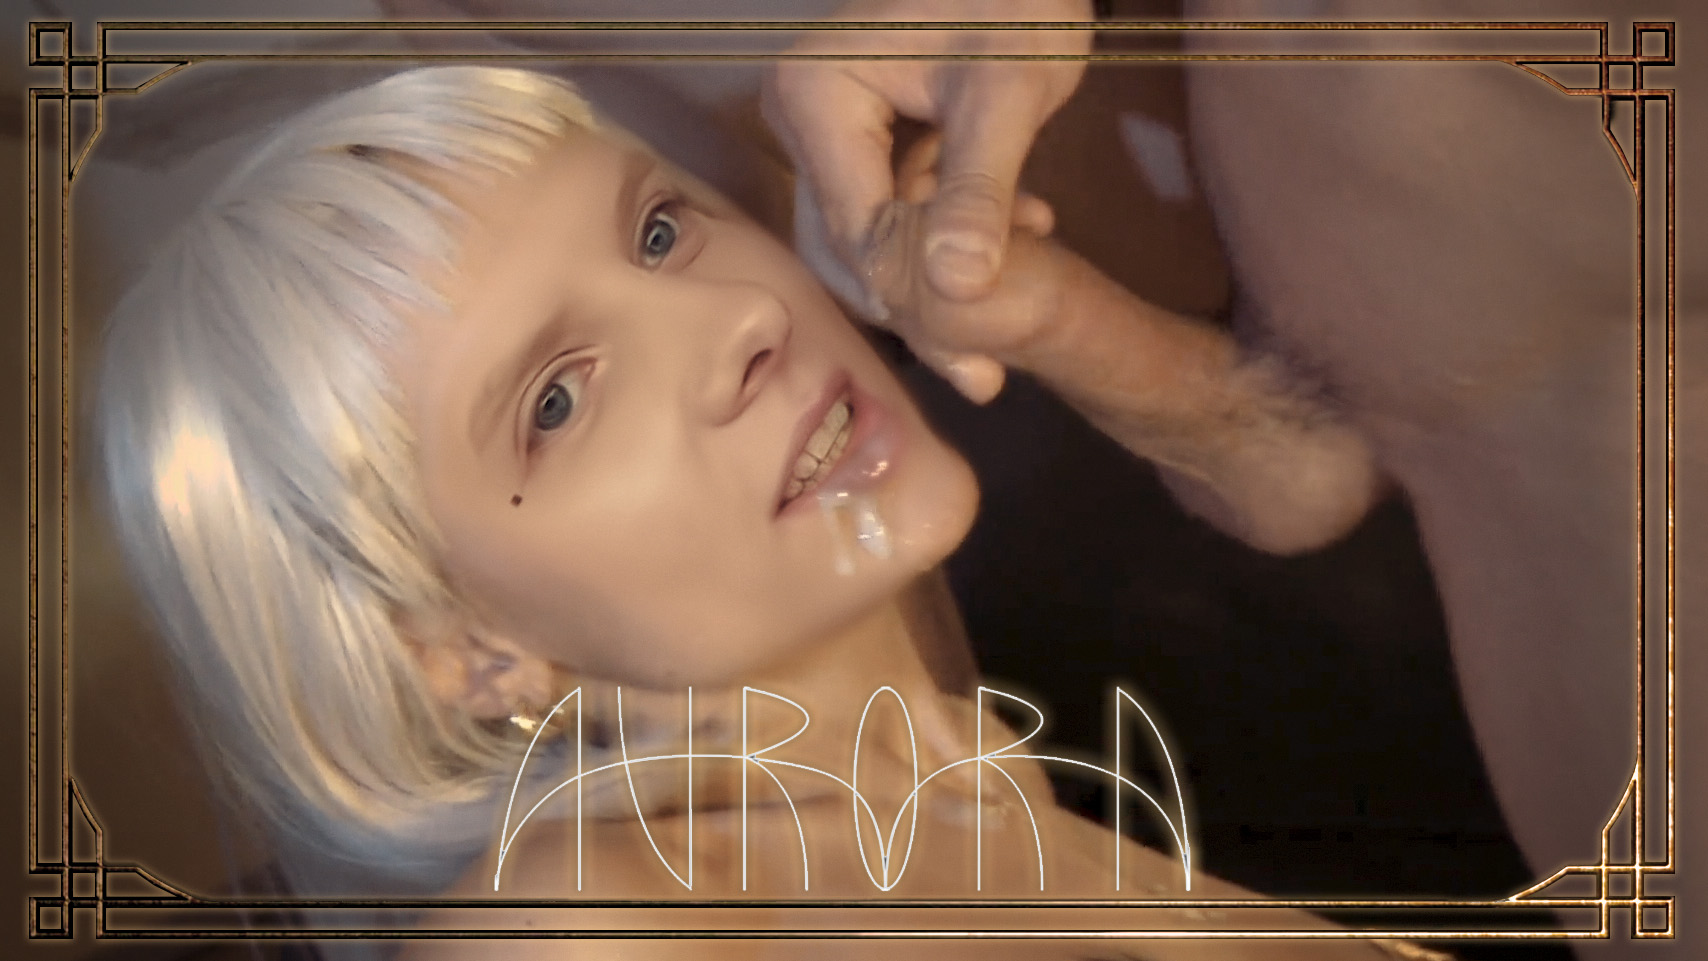 Aurora Aksnes sucks and fucks with facial